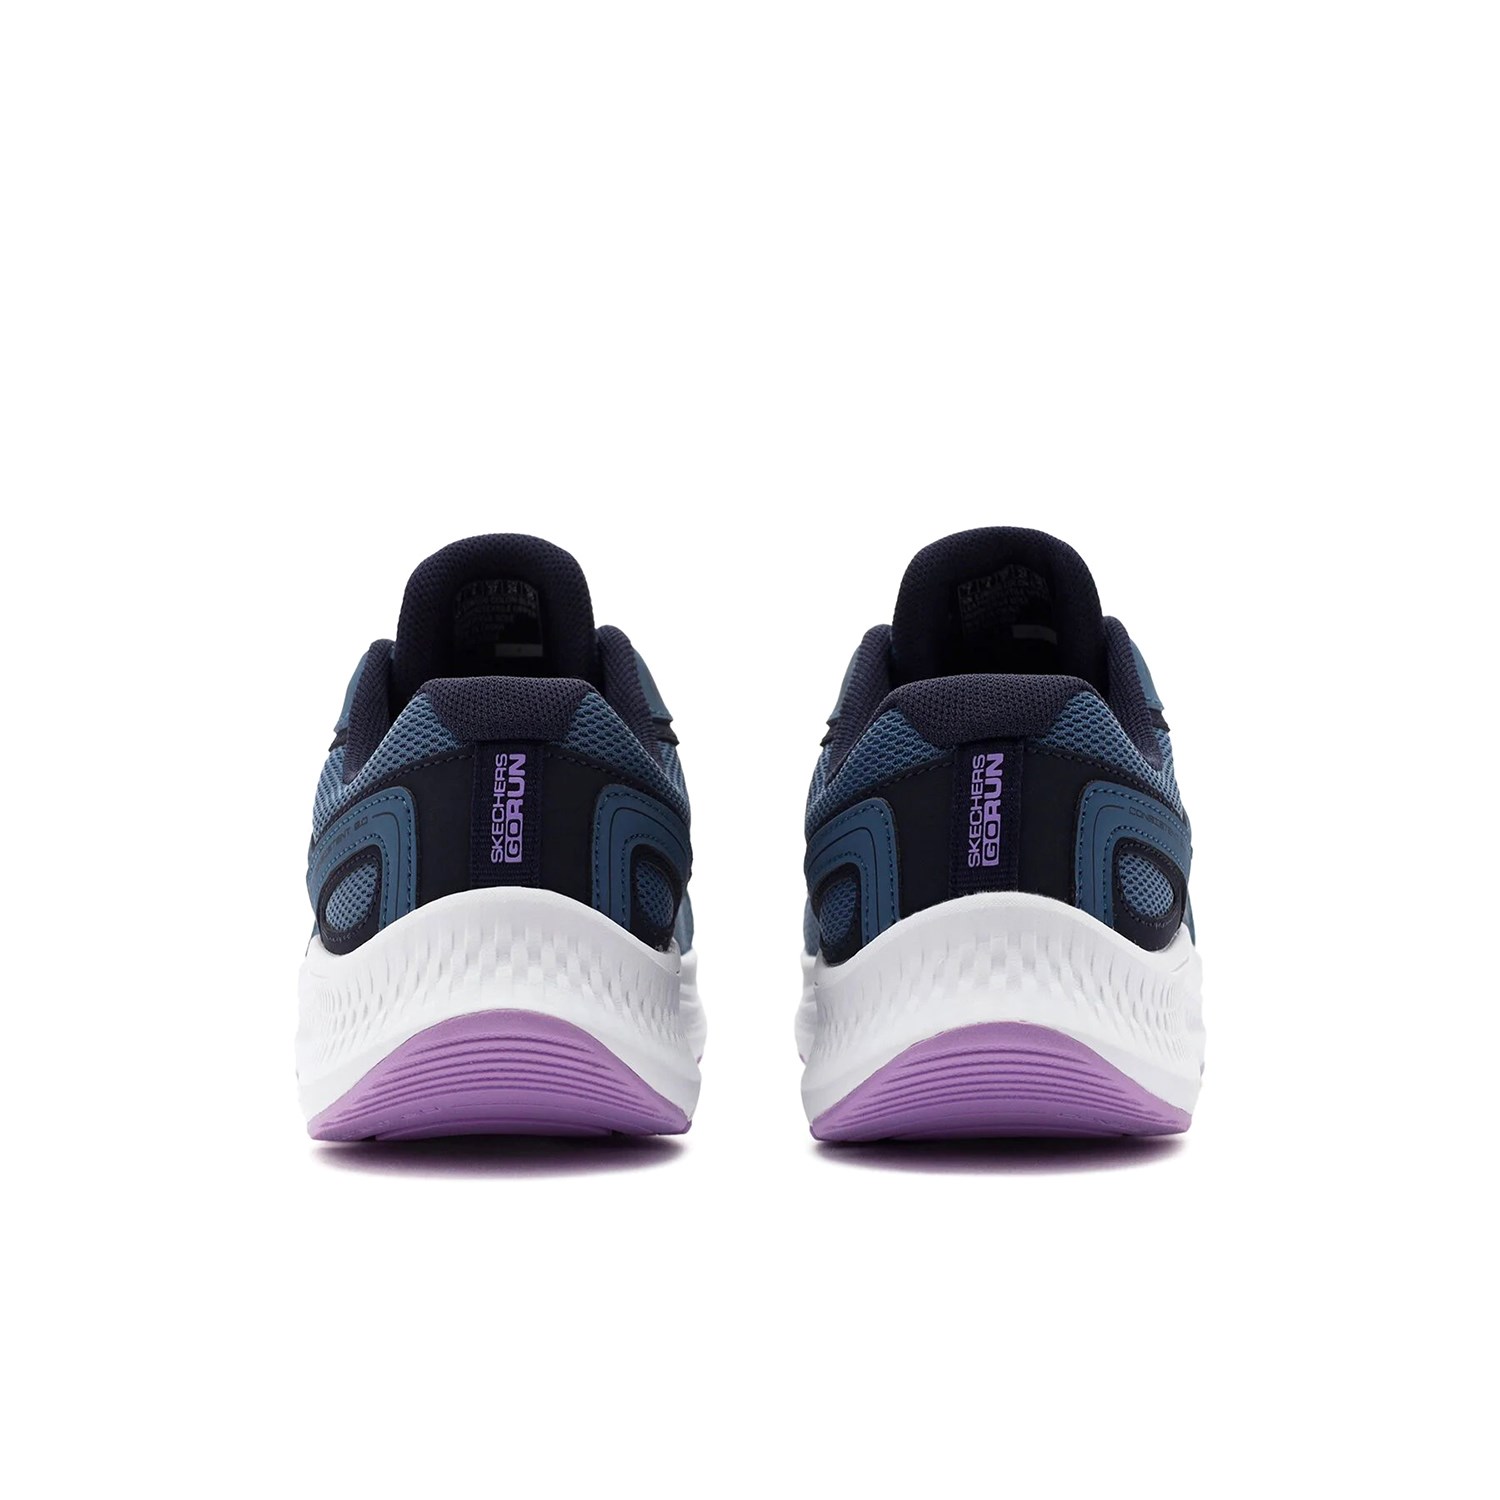 Skechers Go Run Consistent 2.0 - Advantage Kadın Günlük Spor Ayakkabısı Mavi - Mor